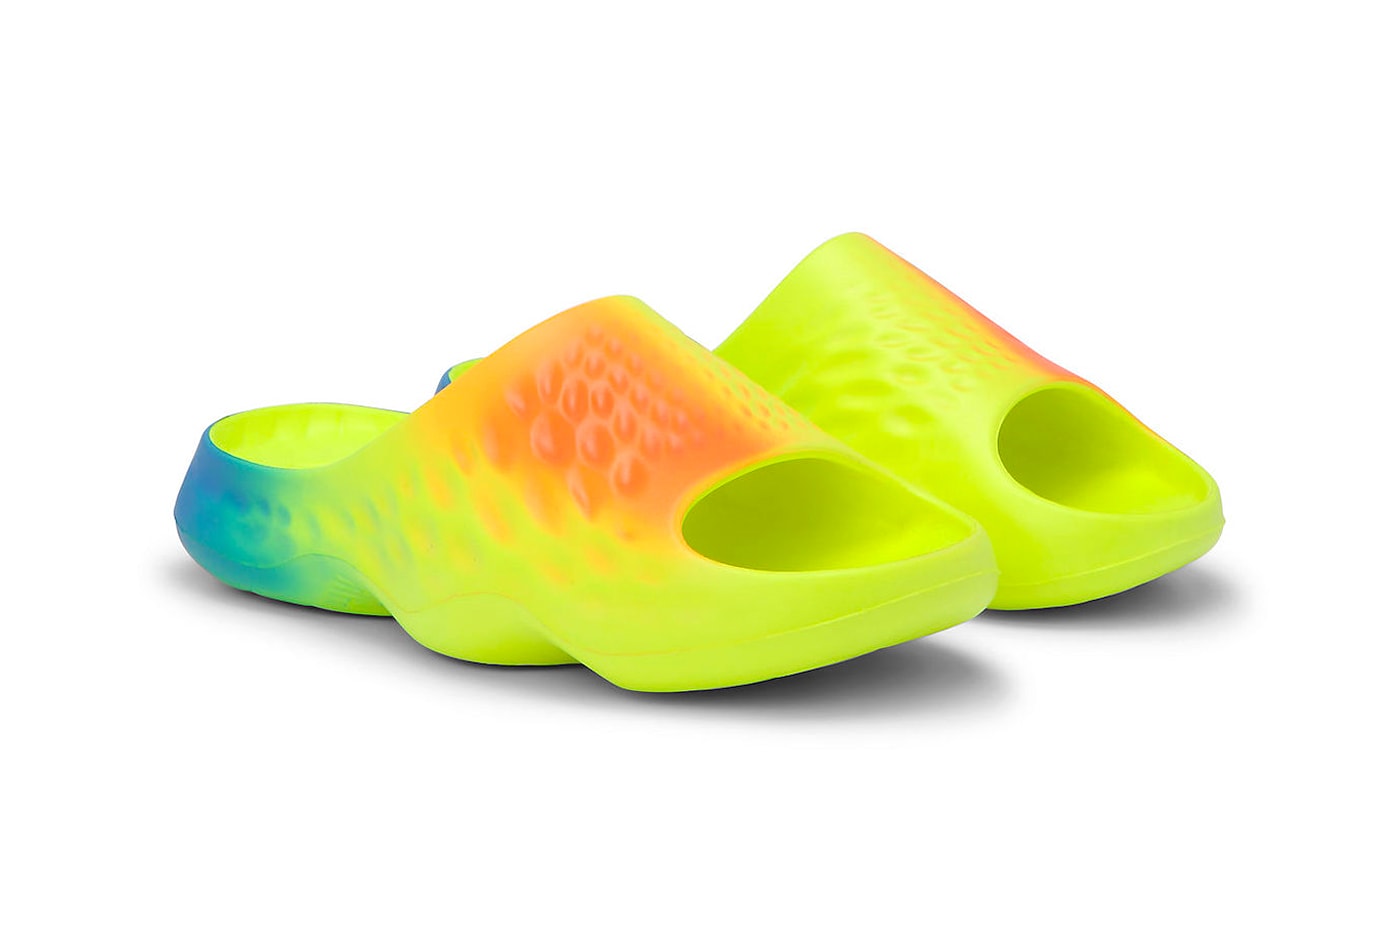 ニューバランスから新型スライドサンダル フレッシュフォーム マーシンが登場 New Balance fresh foam Introduces the MRSHN Slide "Multi-Color" Bright Lapis/Neon Dragonfly-Hi-Lite SUFHUPG3 release info